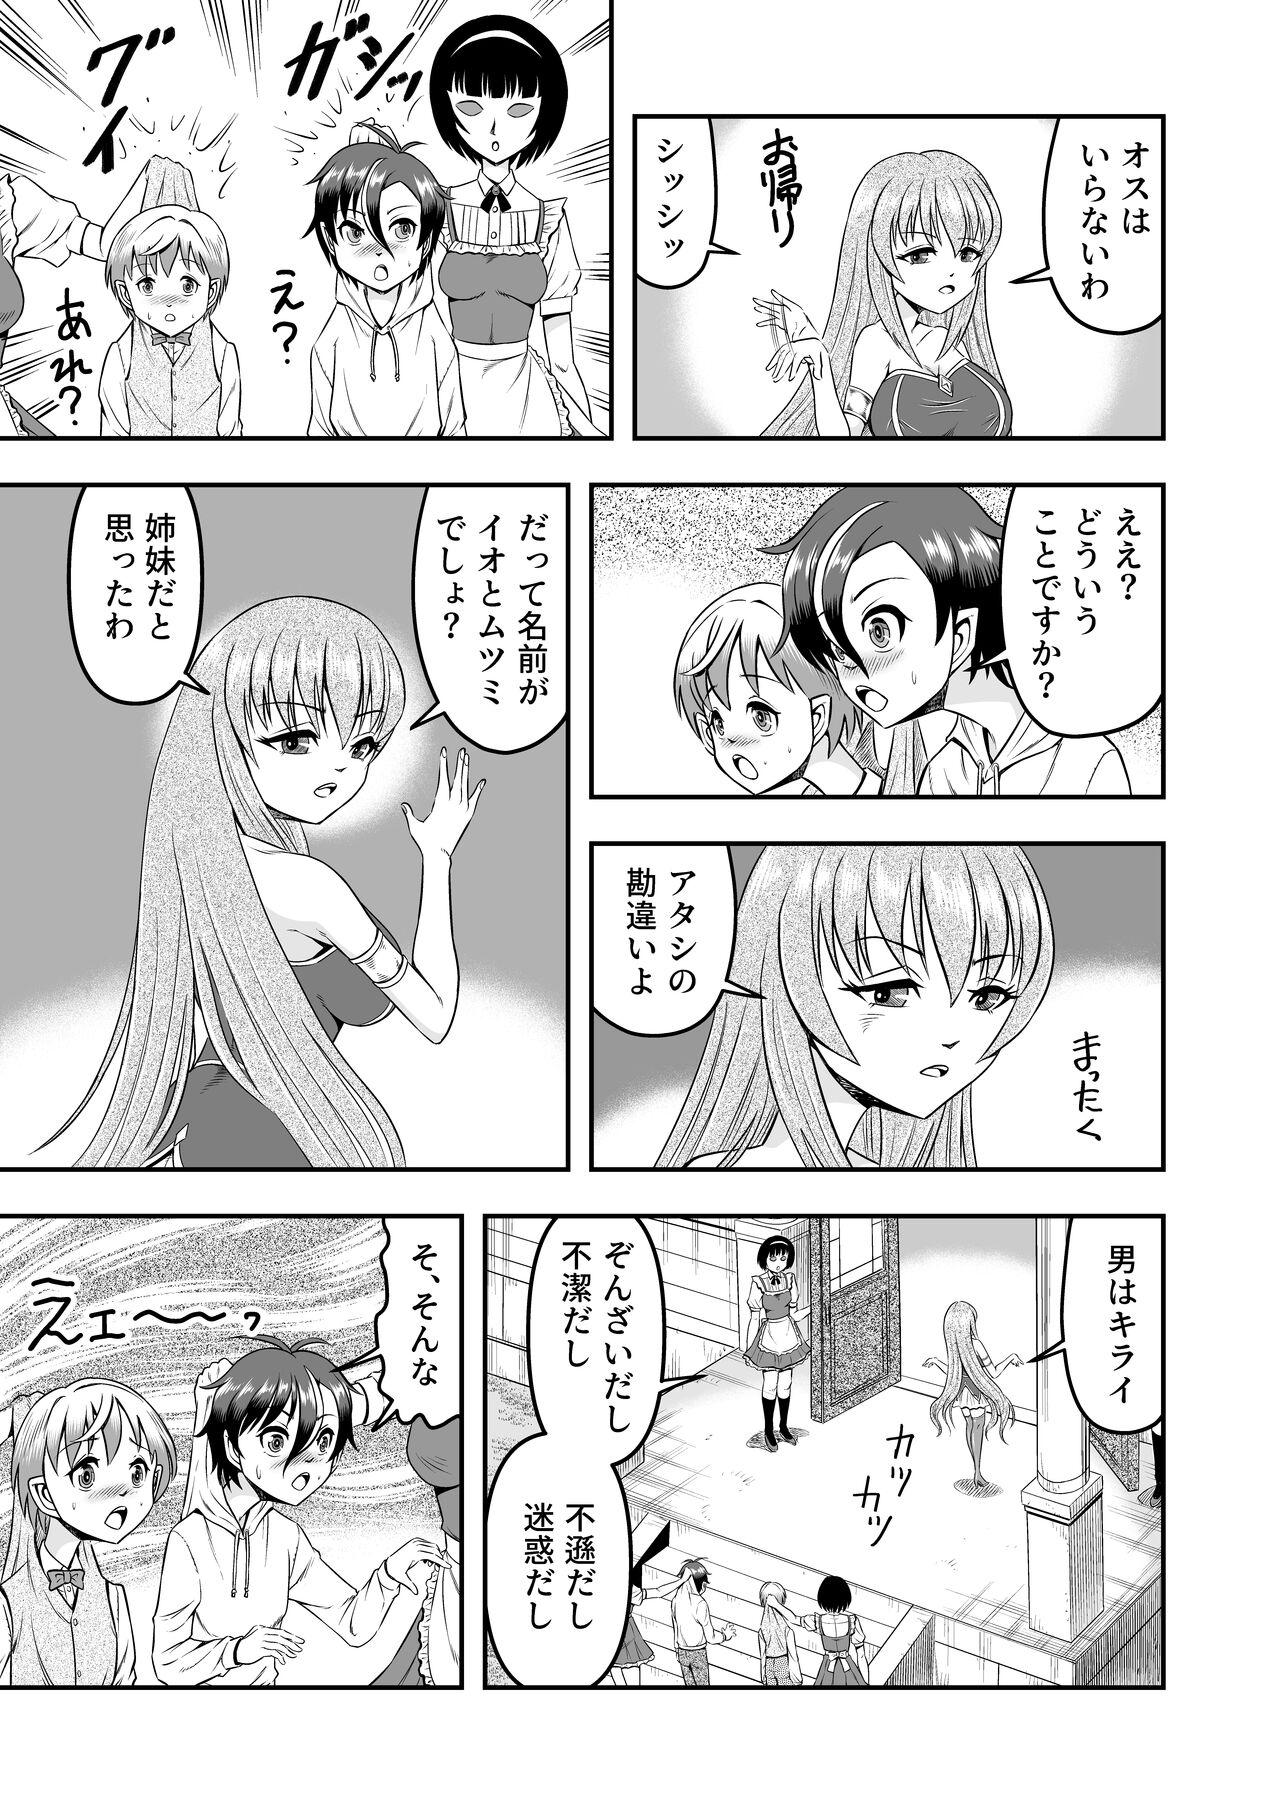 Blowing atashi, osu gakigirai da kara otoko no musume ni shite wakarasemasu !! maehen Teentube - Page 11